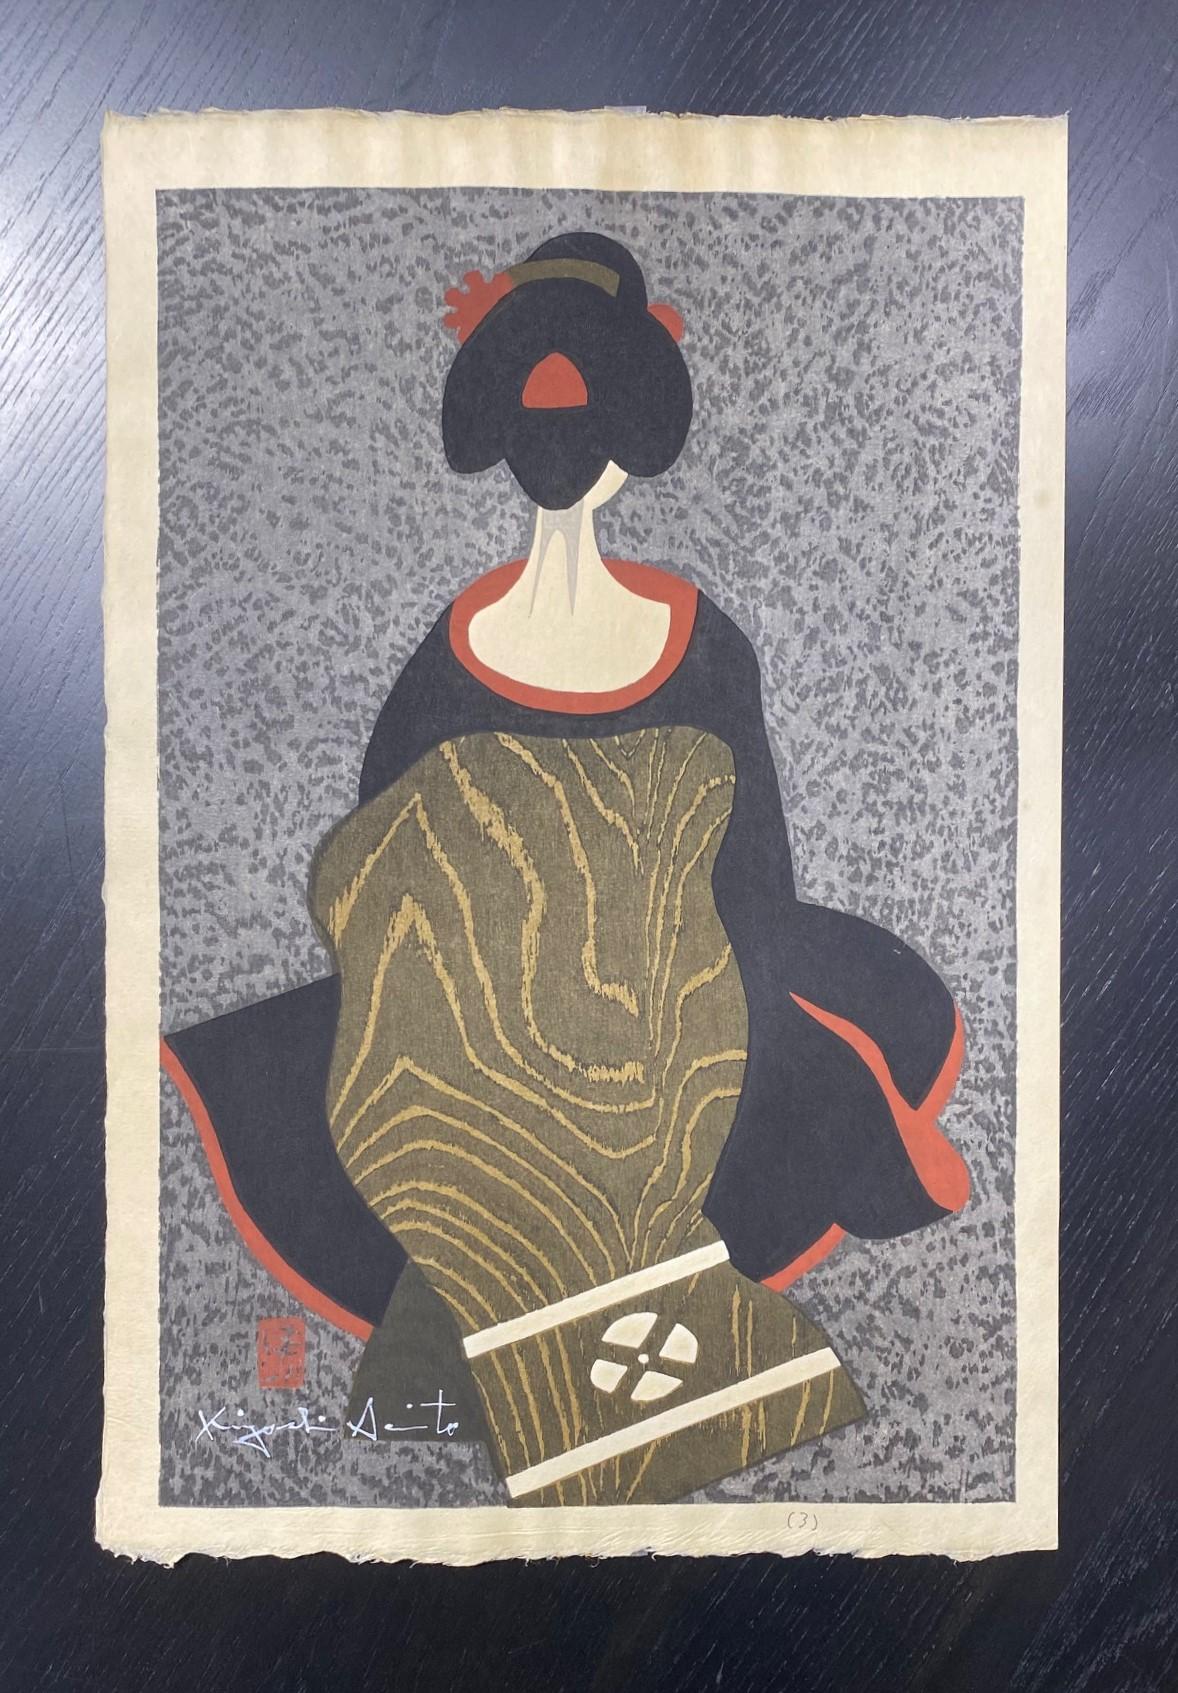 Ein wunderschön und ruhig komponierter Farbholzschnitt des berühmten japanischen Grafikers Kiyoshi Saito. Viele halten Saito für einen der wichtigsten, wenn nicht den wichtigsten zeitgenössischen japanischen Grafiker des 20. Dieser Druck mit dem